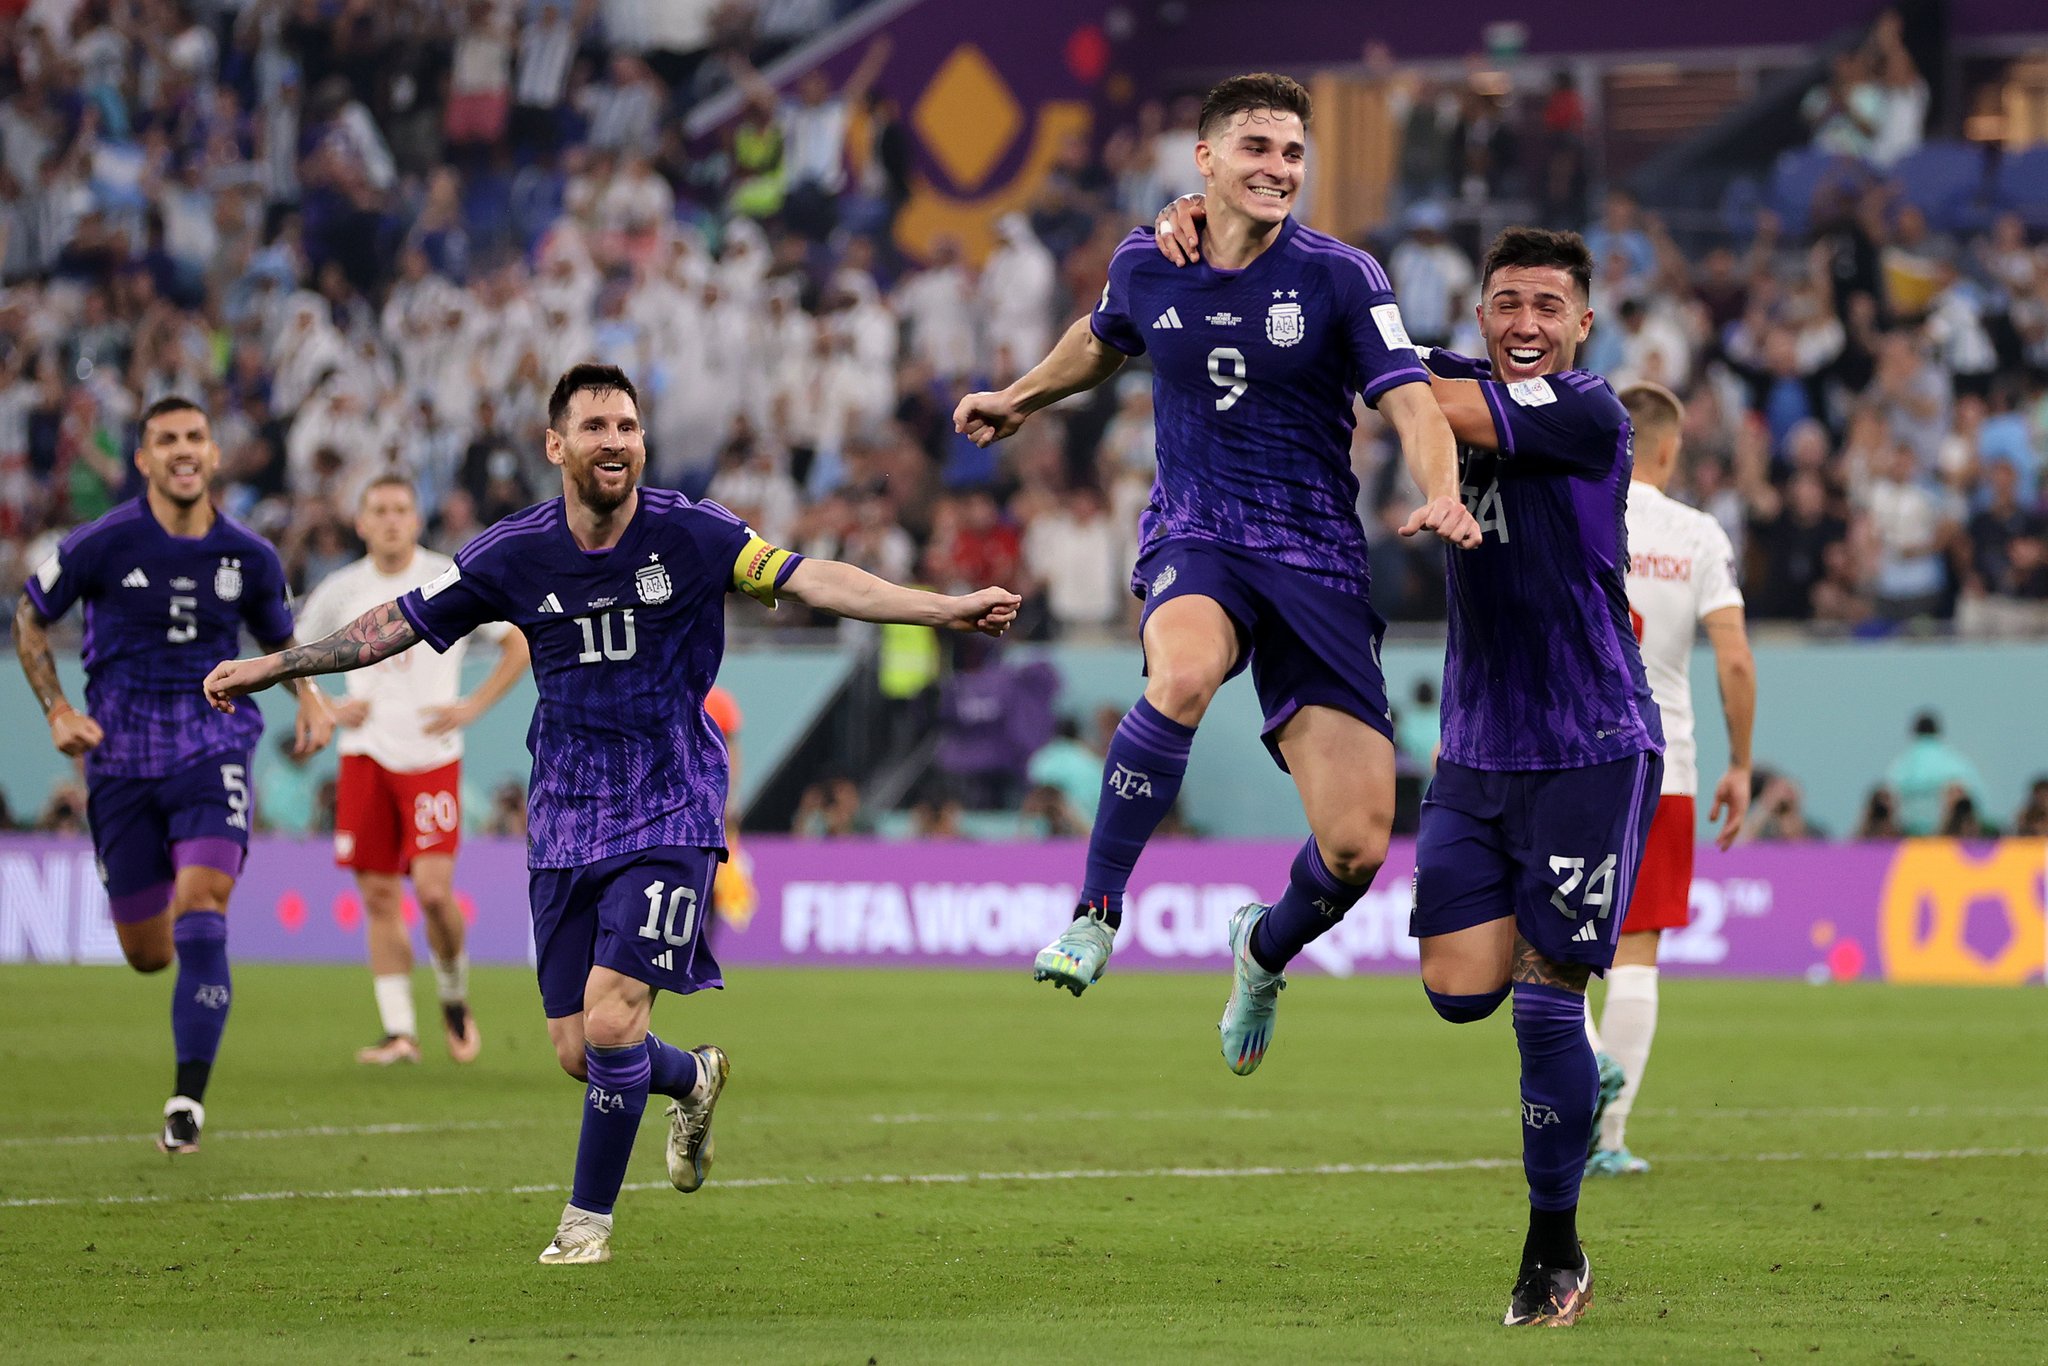 الأرجنتين تهزم بولندا بثنائية نظيفة ويصعدان سوياً إلى ثمن نهائى كأس العالم قطر 2022.